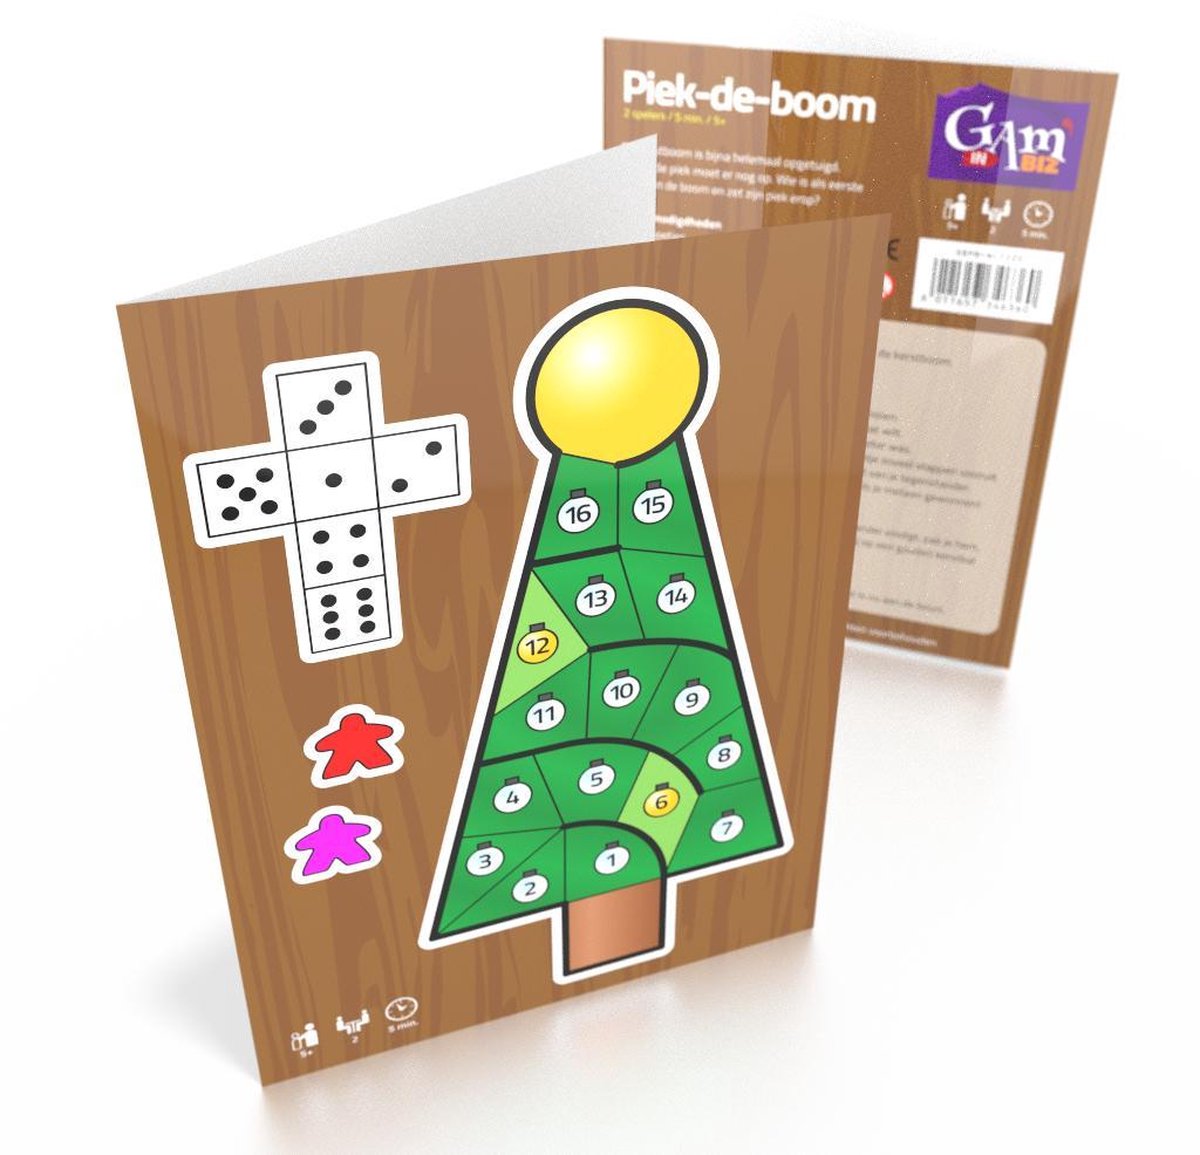 Piek-de-boom - Kerstkaart en bordspel in een | bol.com